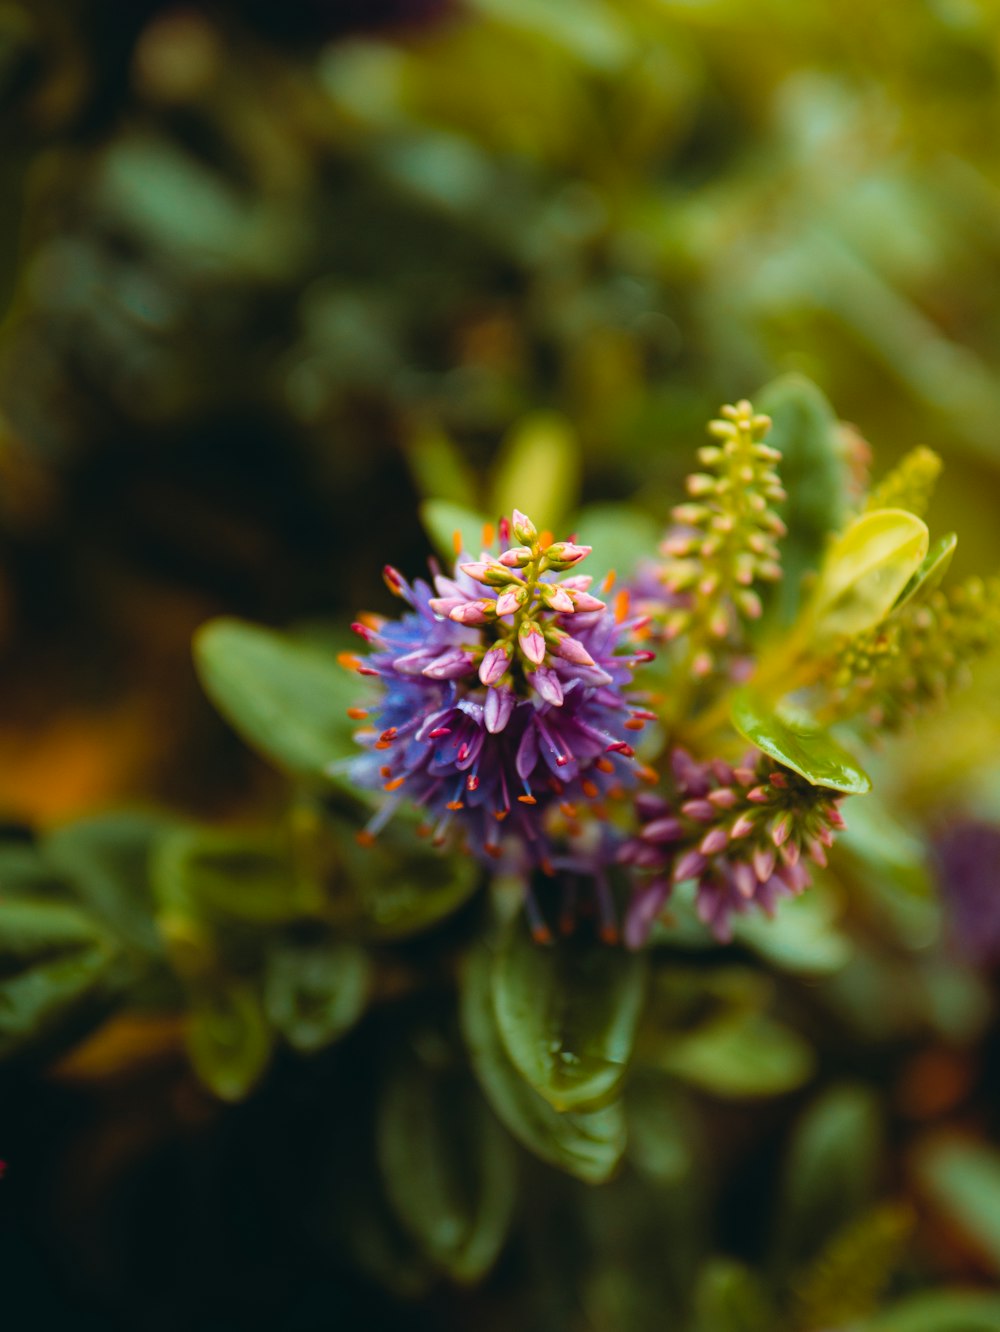 purple flower in green stem